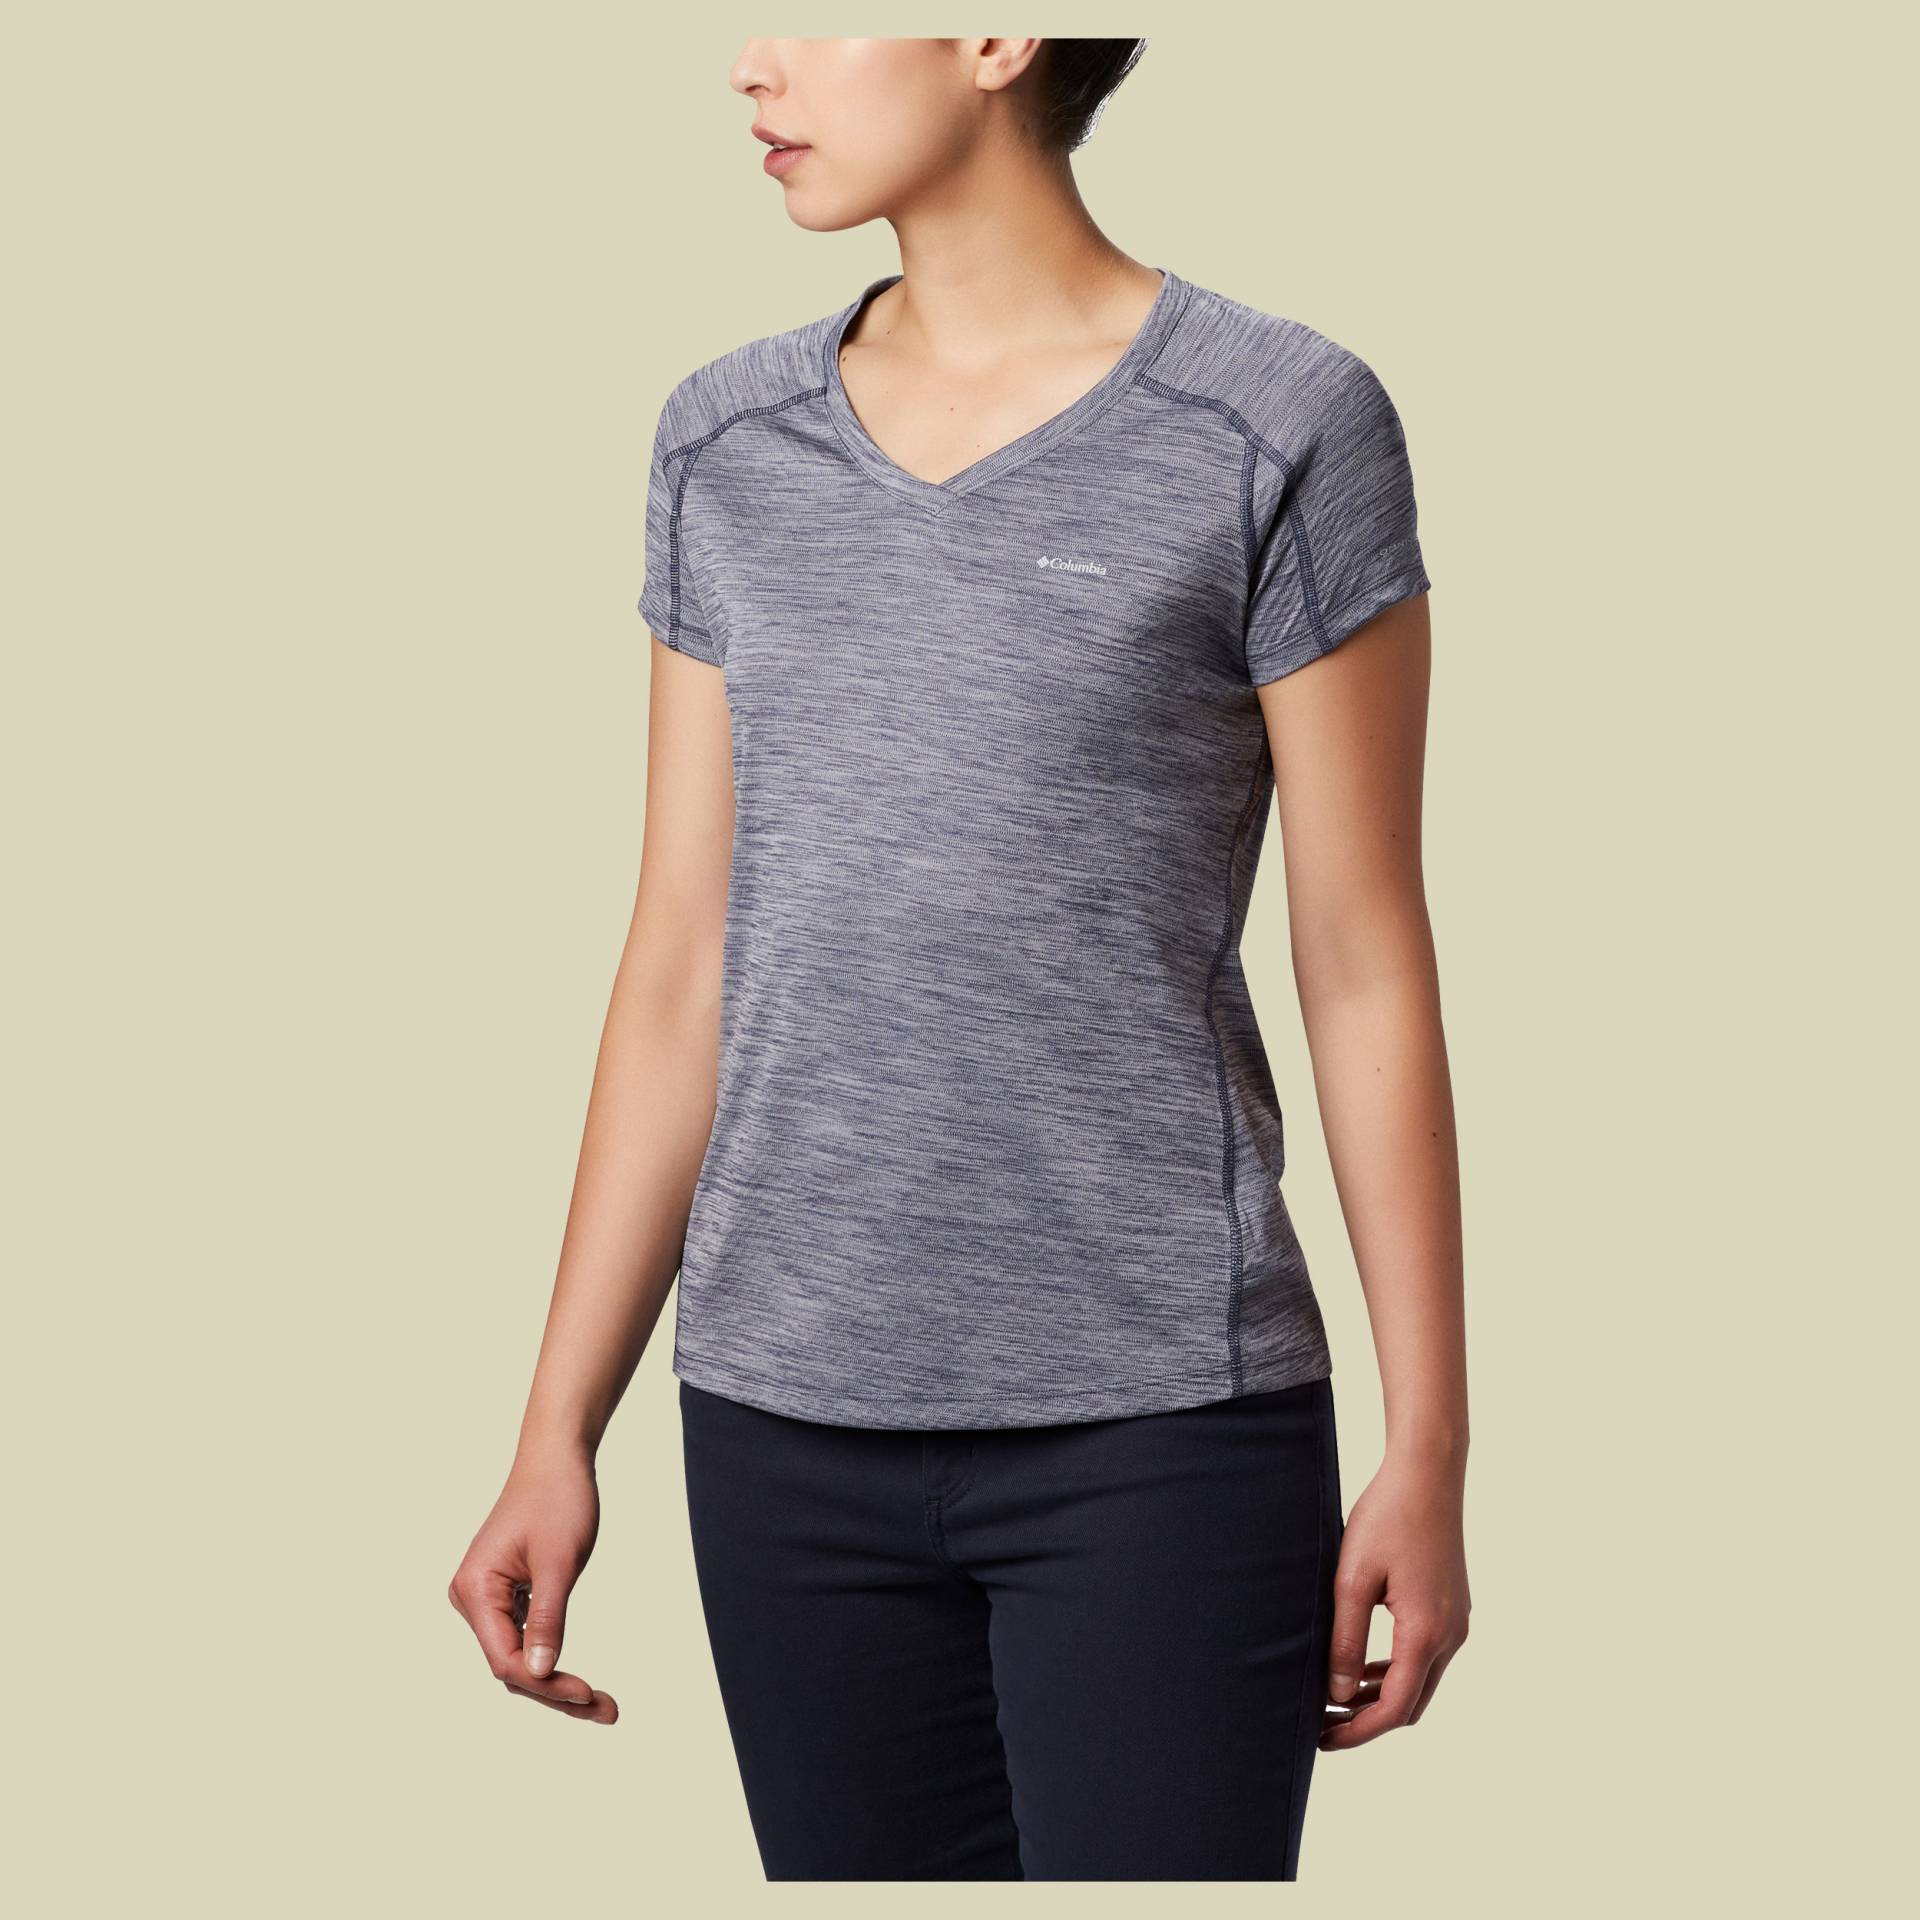 Zero Rules Short Sleeve Shirt Women Größe L Farbe nocturnal heather von Columbia